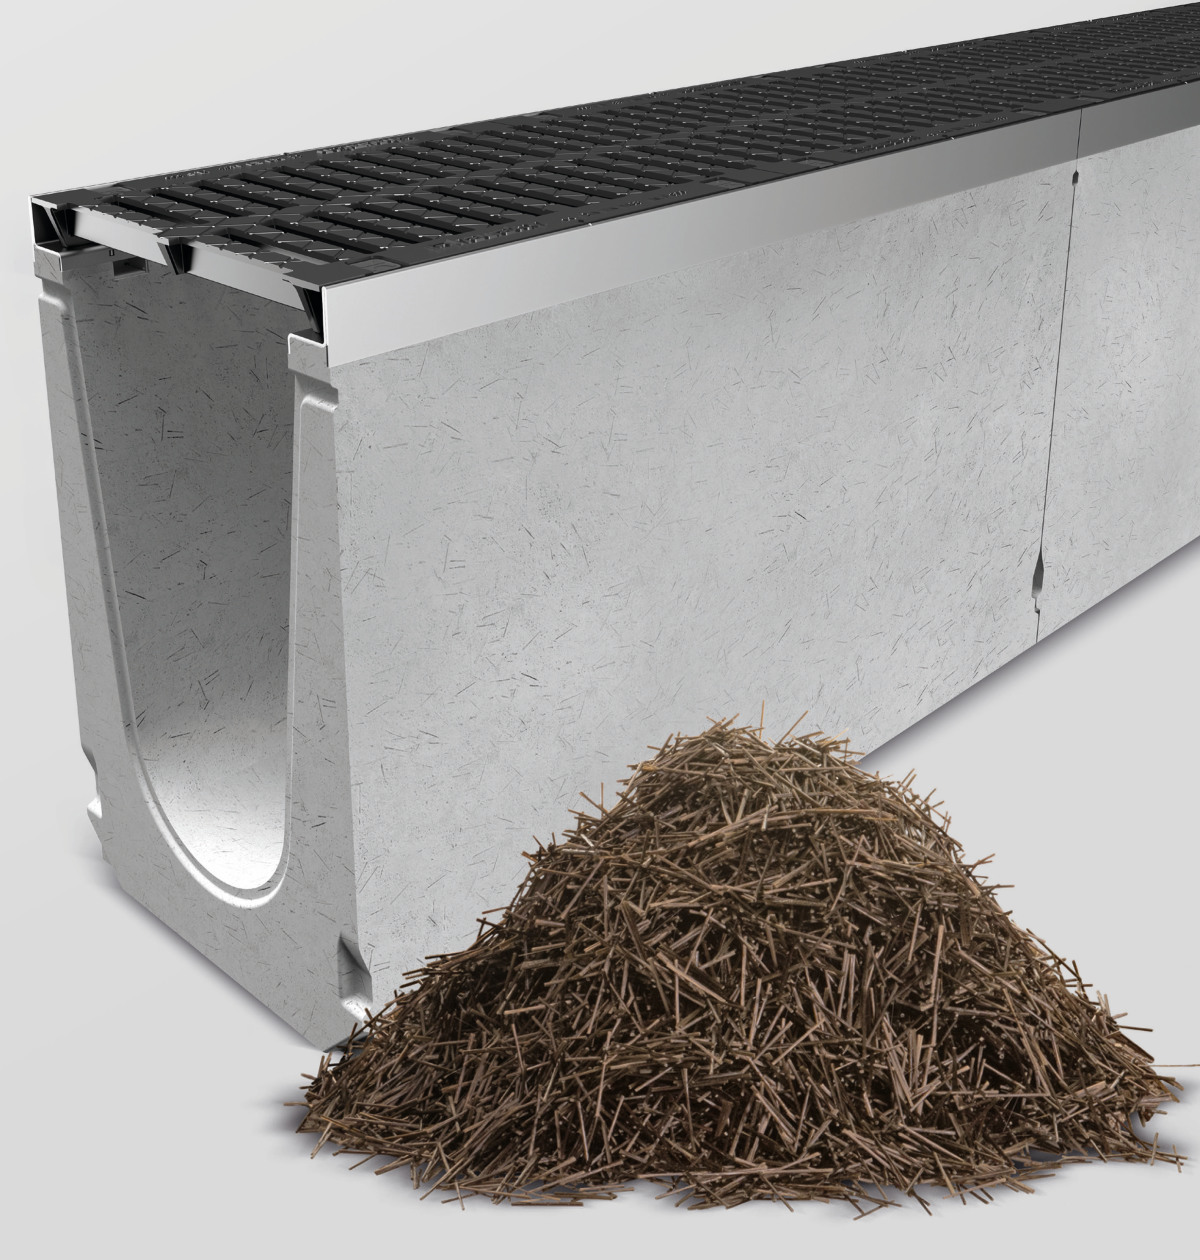 Für die Faserfix Entwässerungssysteme aus faserbewehrtem Beton bringt der Einsatz von Basaltfasern viele Vorteile.